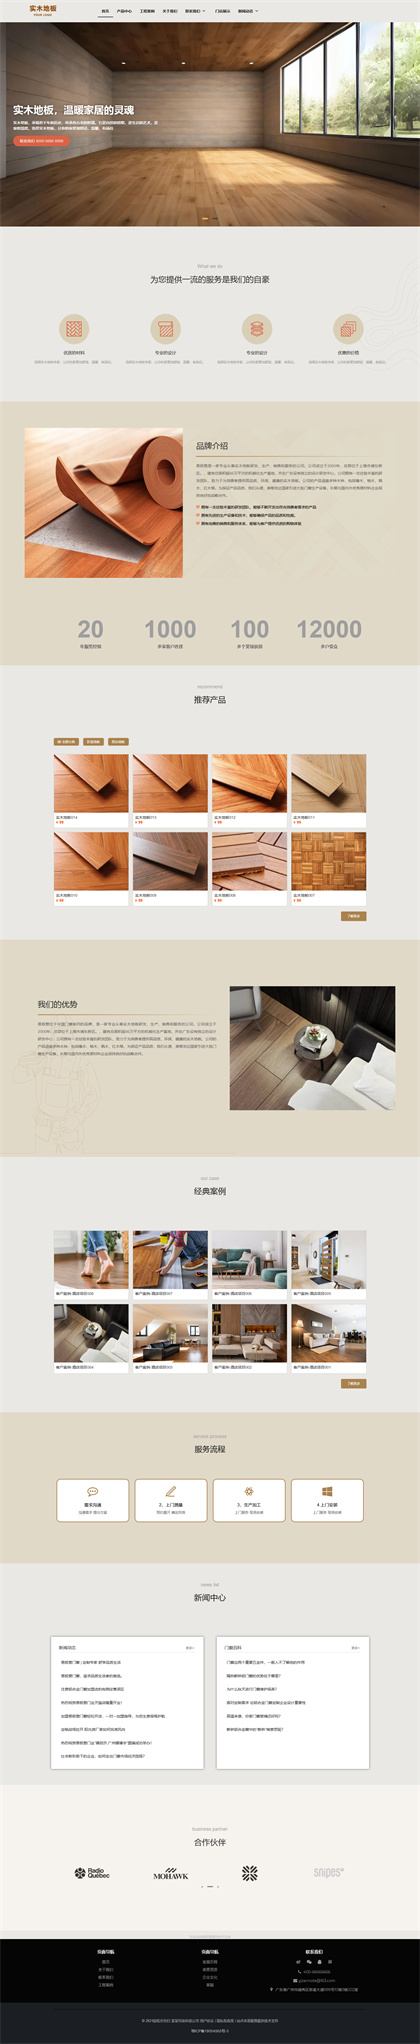 地板瓷砖-实木地板-装修公司-建材公司-网站模板网站模板预览图片